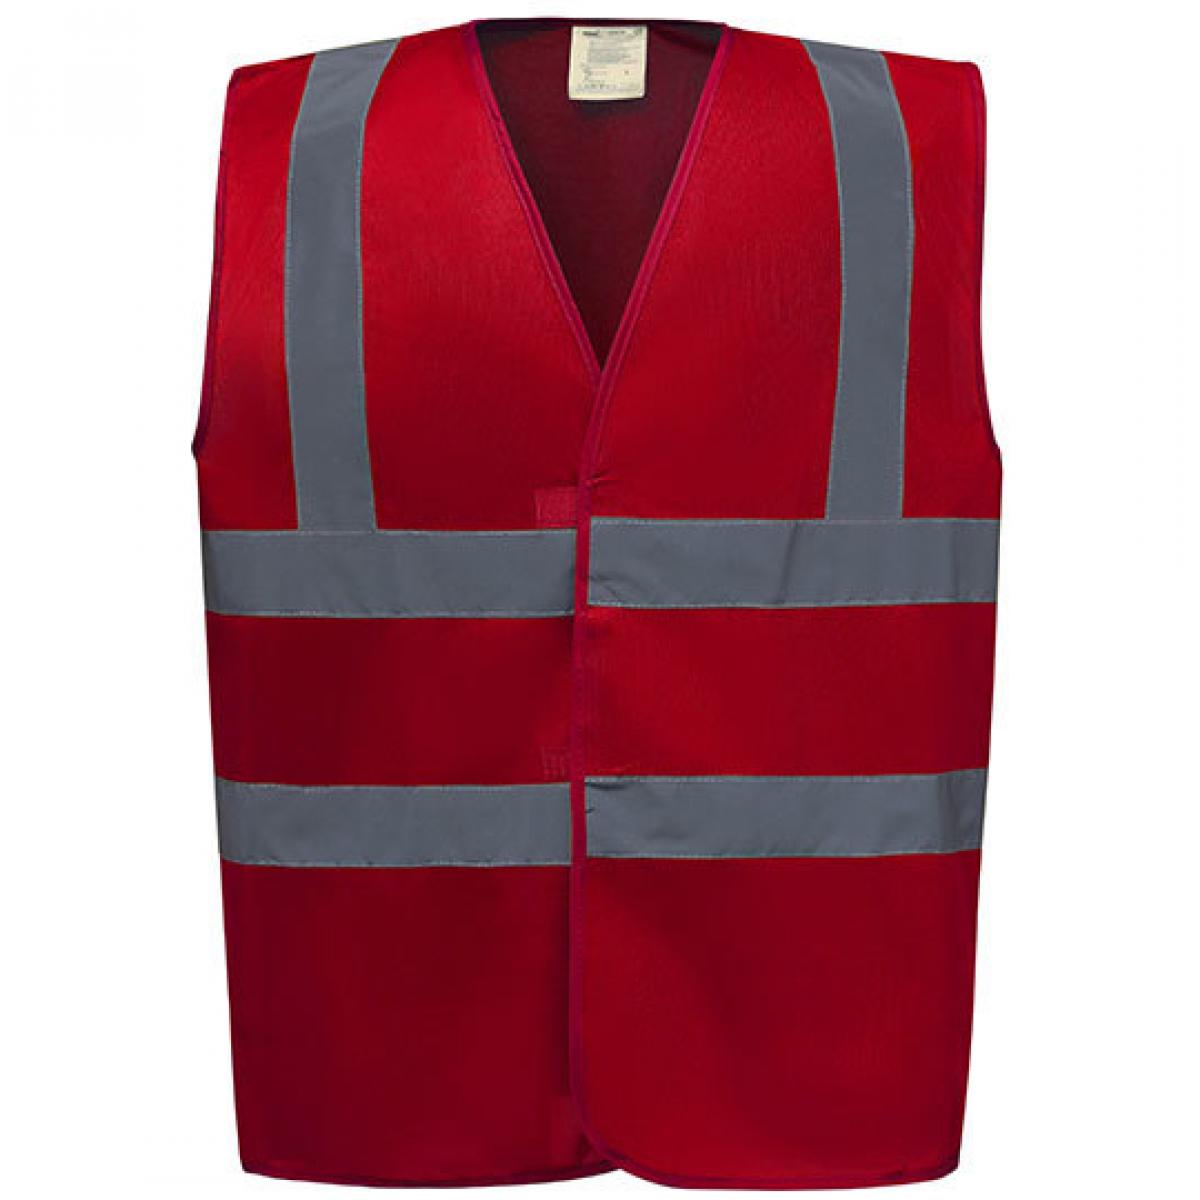 Hersteller: YOKO Herstellernummer: HVW100 Artikelbezeichnung: Sicherheitsweste High Visibility 2 Bands & Braces Waistcoat Farbe: Red